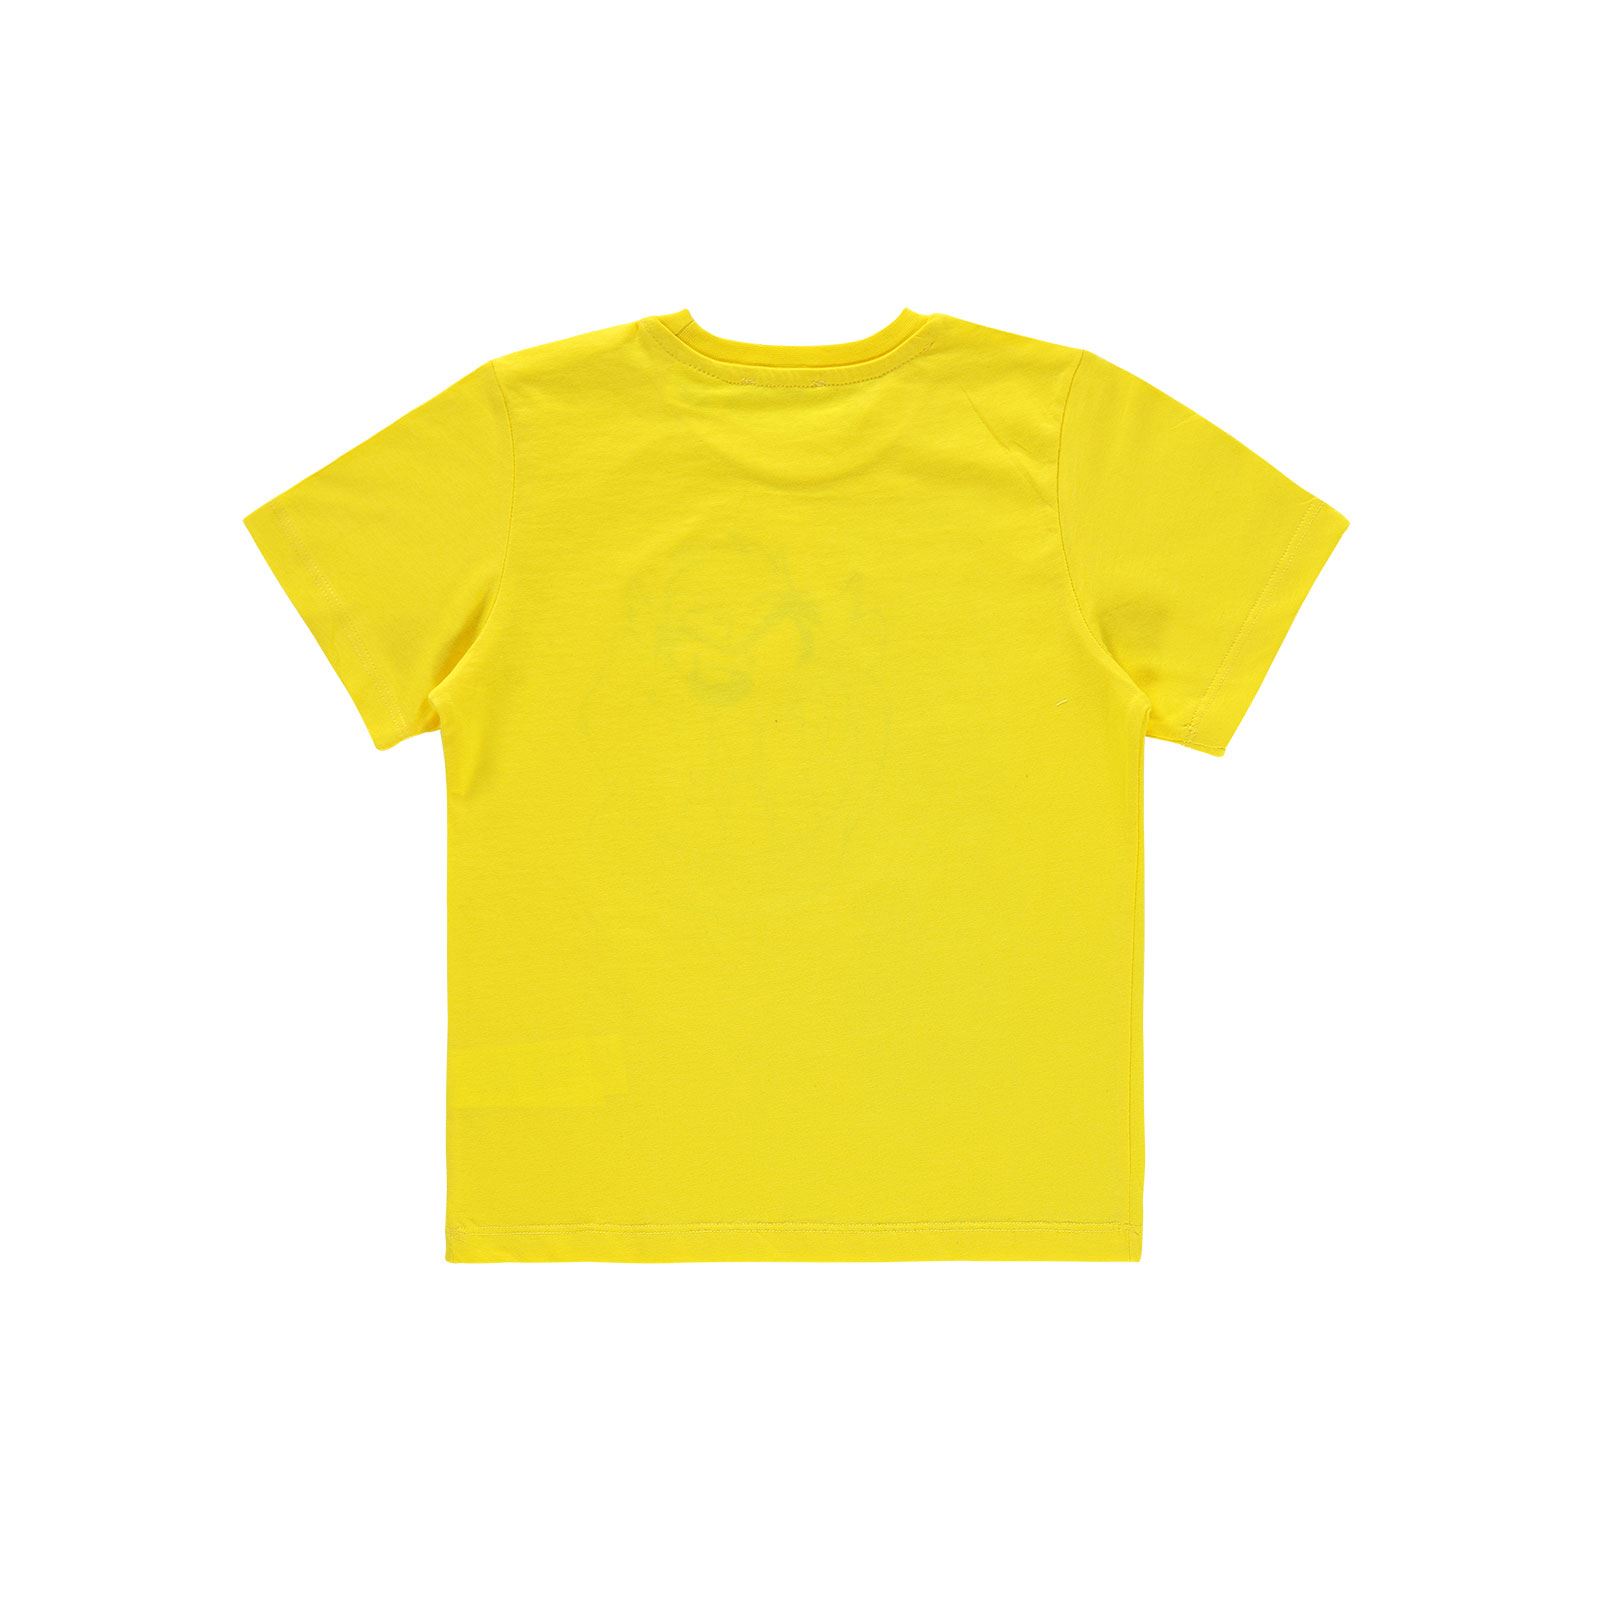 Tazmanya Erkek Çocuk Tişört 6-9 Yaş Sarı